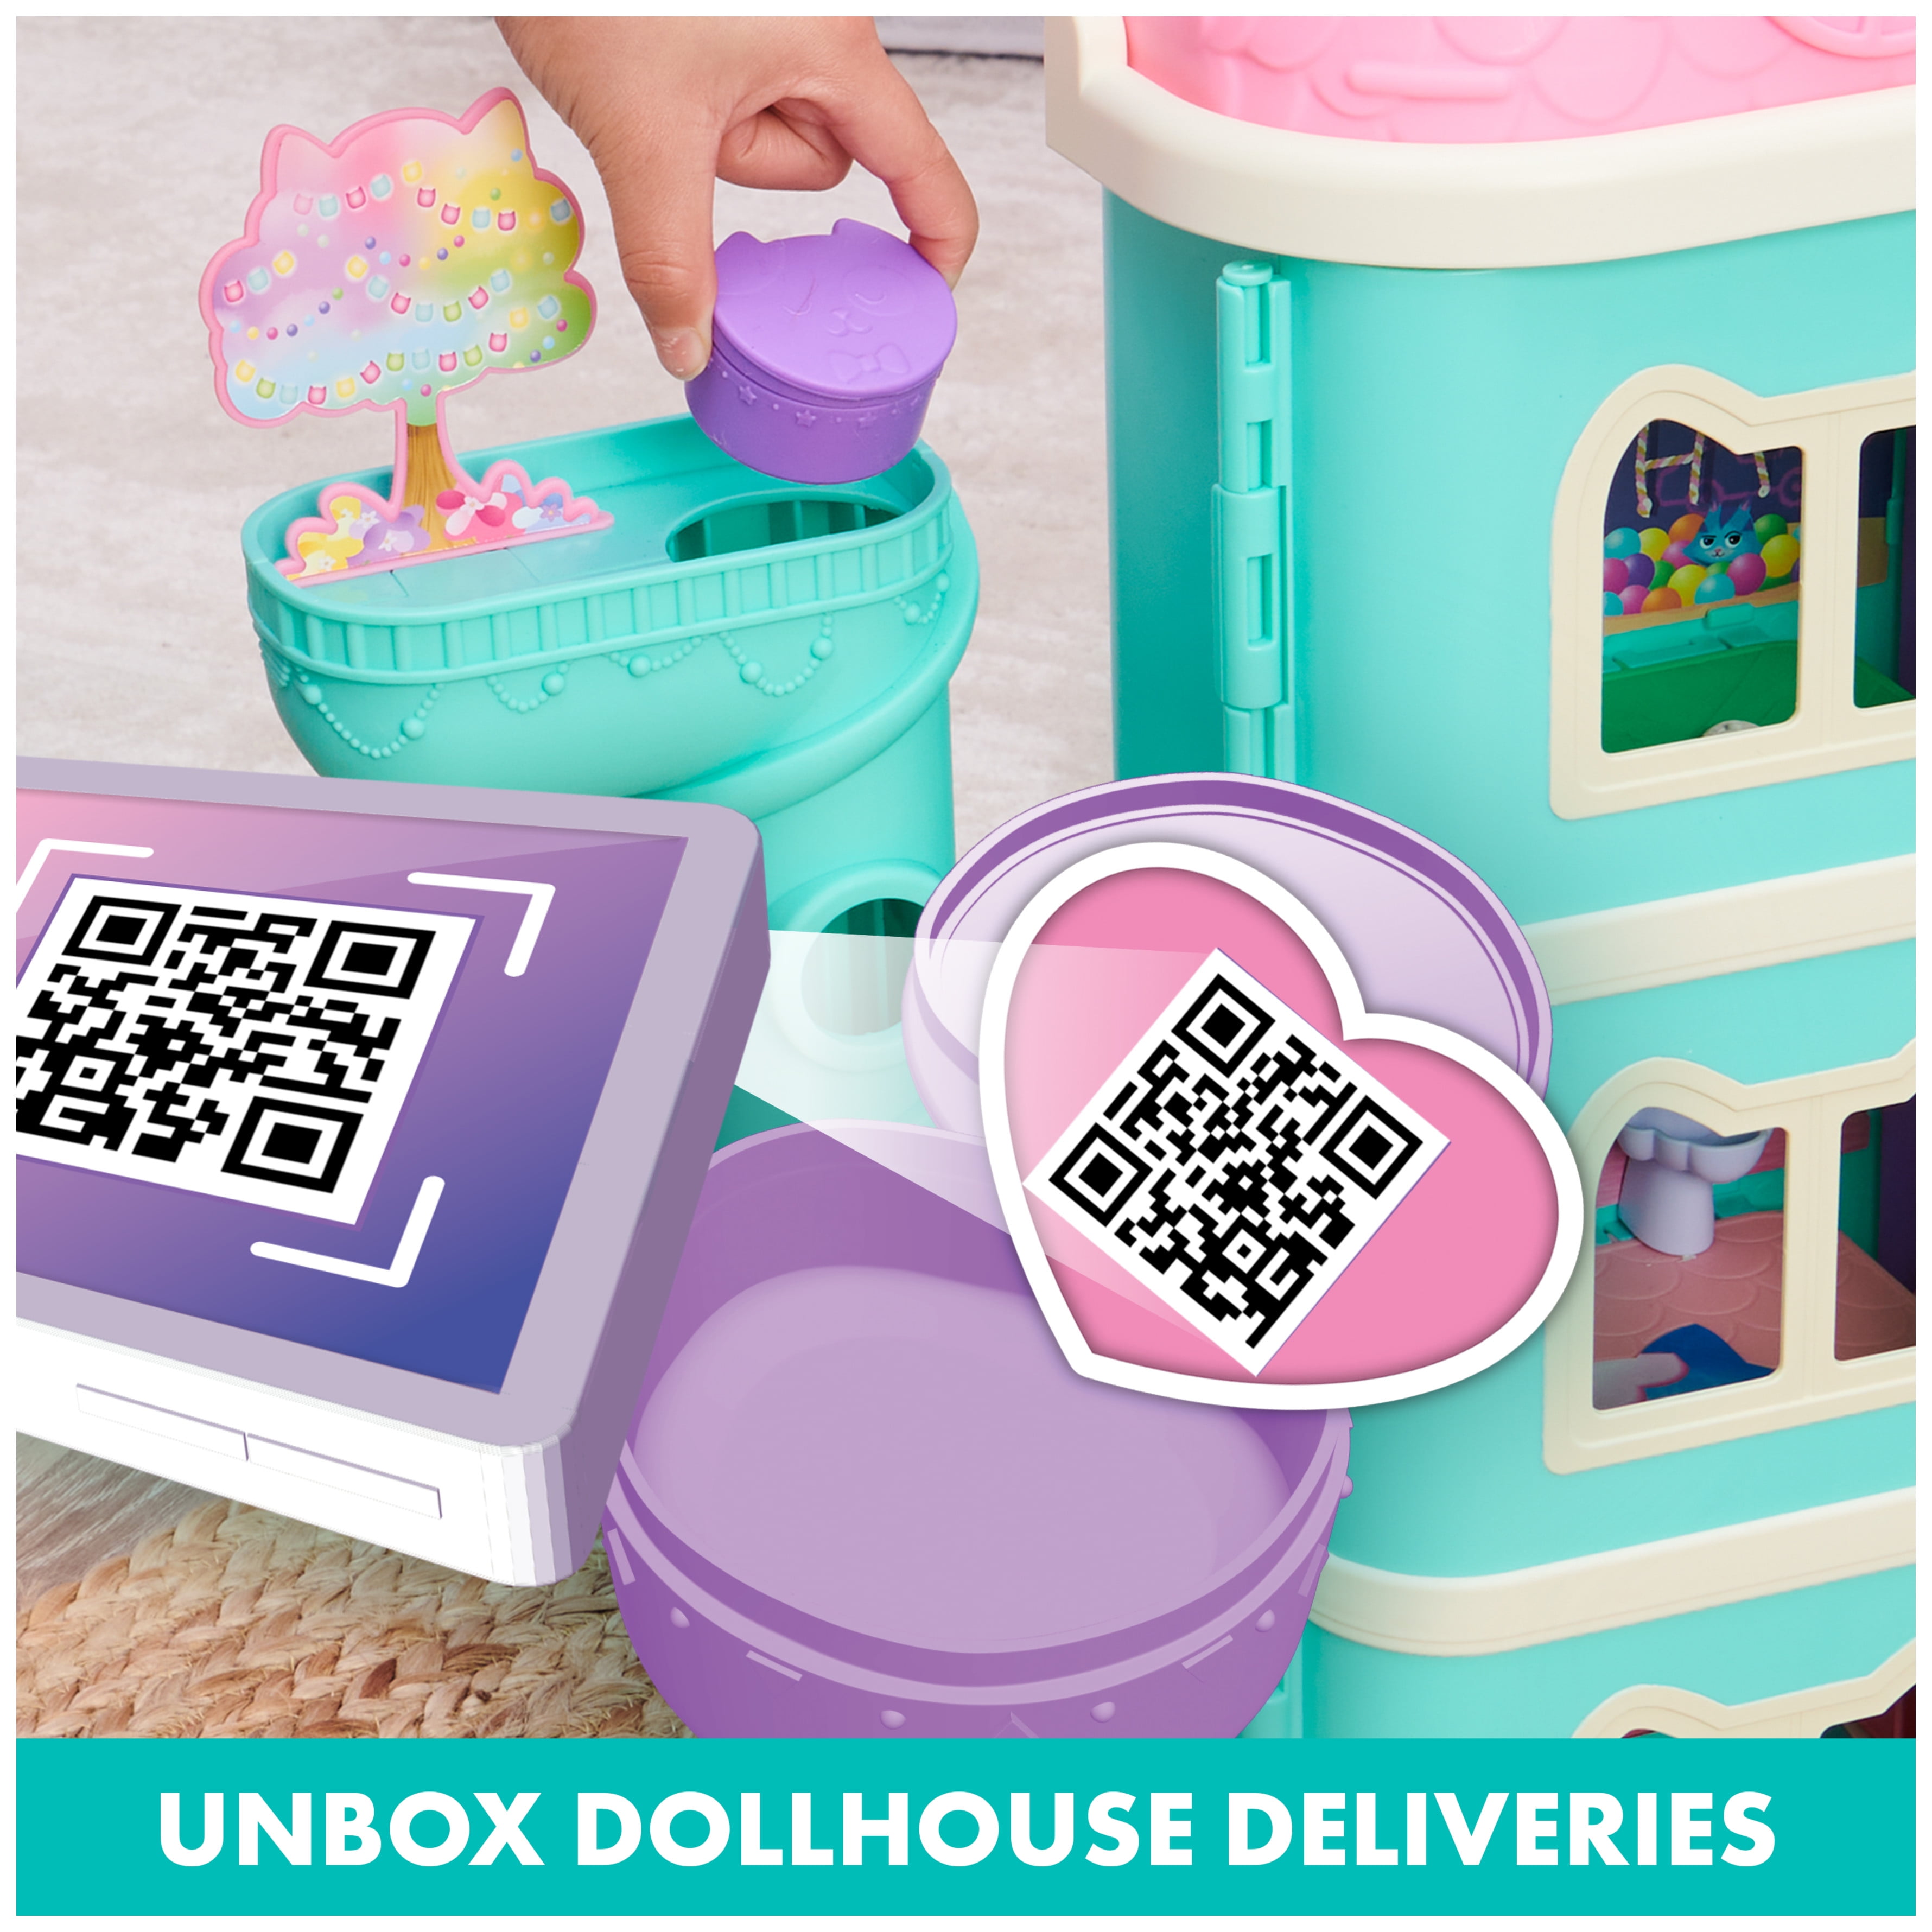 Gabby's dollhouse gabby's dollhouse, purrfect dollhouse avec 2 figurines  jouets, 8 meubles, 3 accessoires, 2 boîtes su - gabby's purrfect dollhouse  (1 set), Delivery Near You